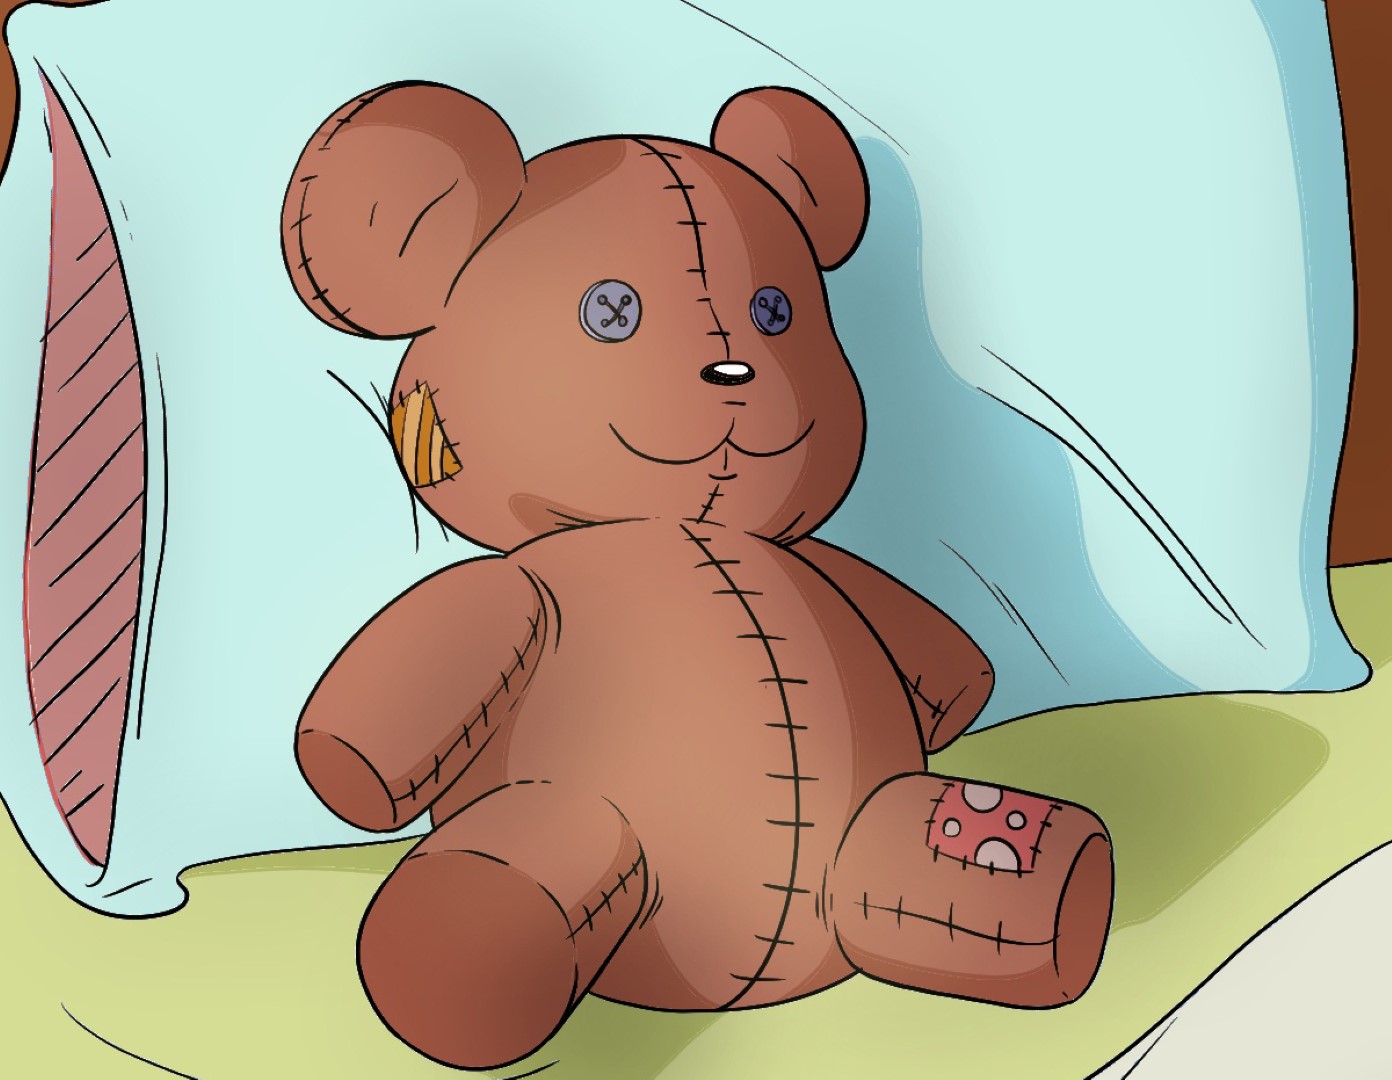 Teddy Bear draw. Teddy Bear drawing. Teddy draw. Детский рисунок плюшевый мишка светло-коричневого цвета. Drew born